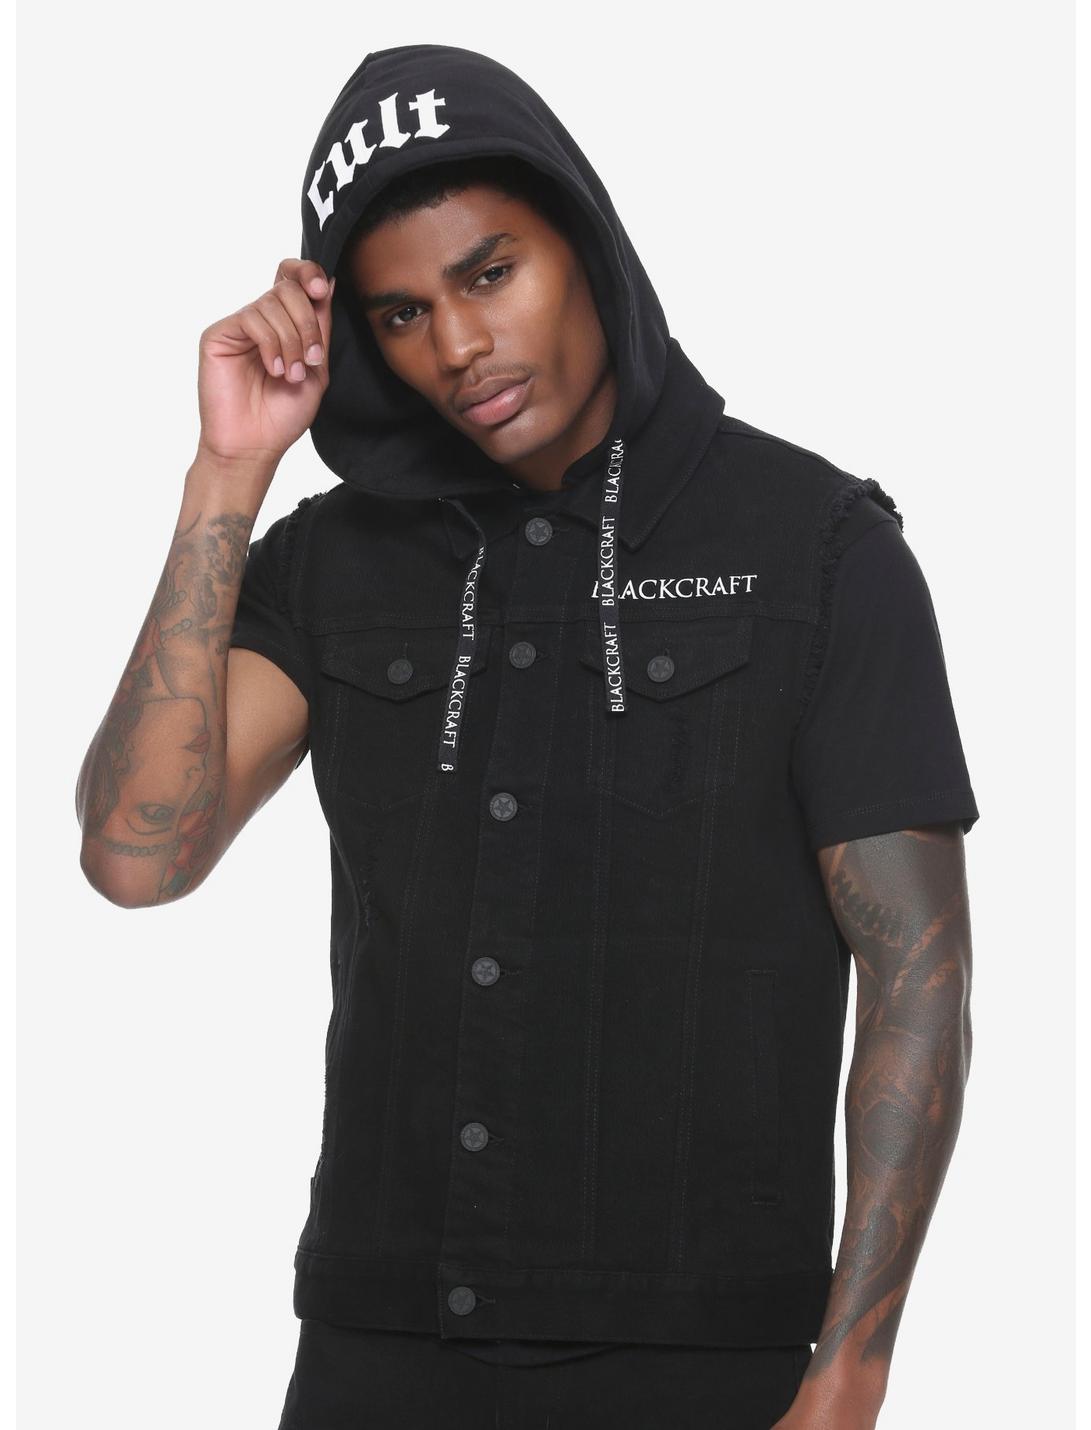 BlackCraft Hooded Denim Vest, BLACK, hi-res